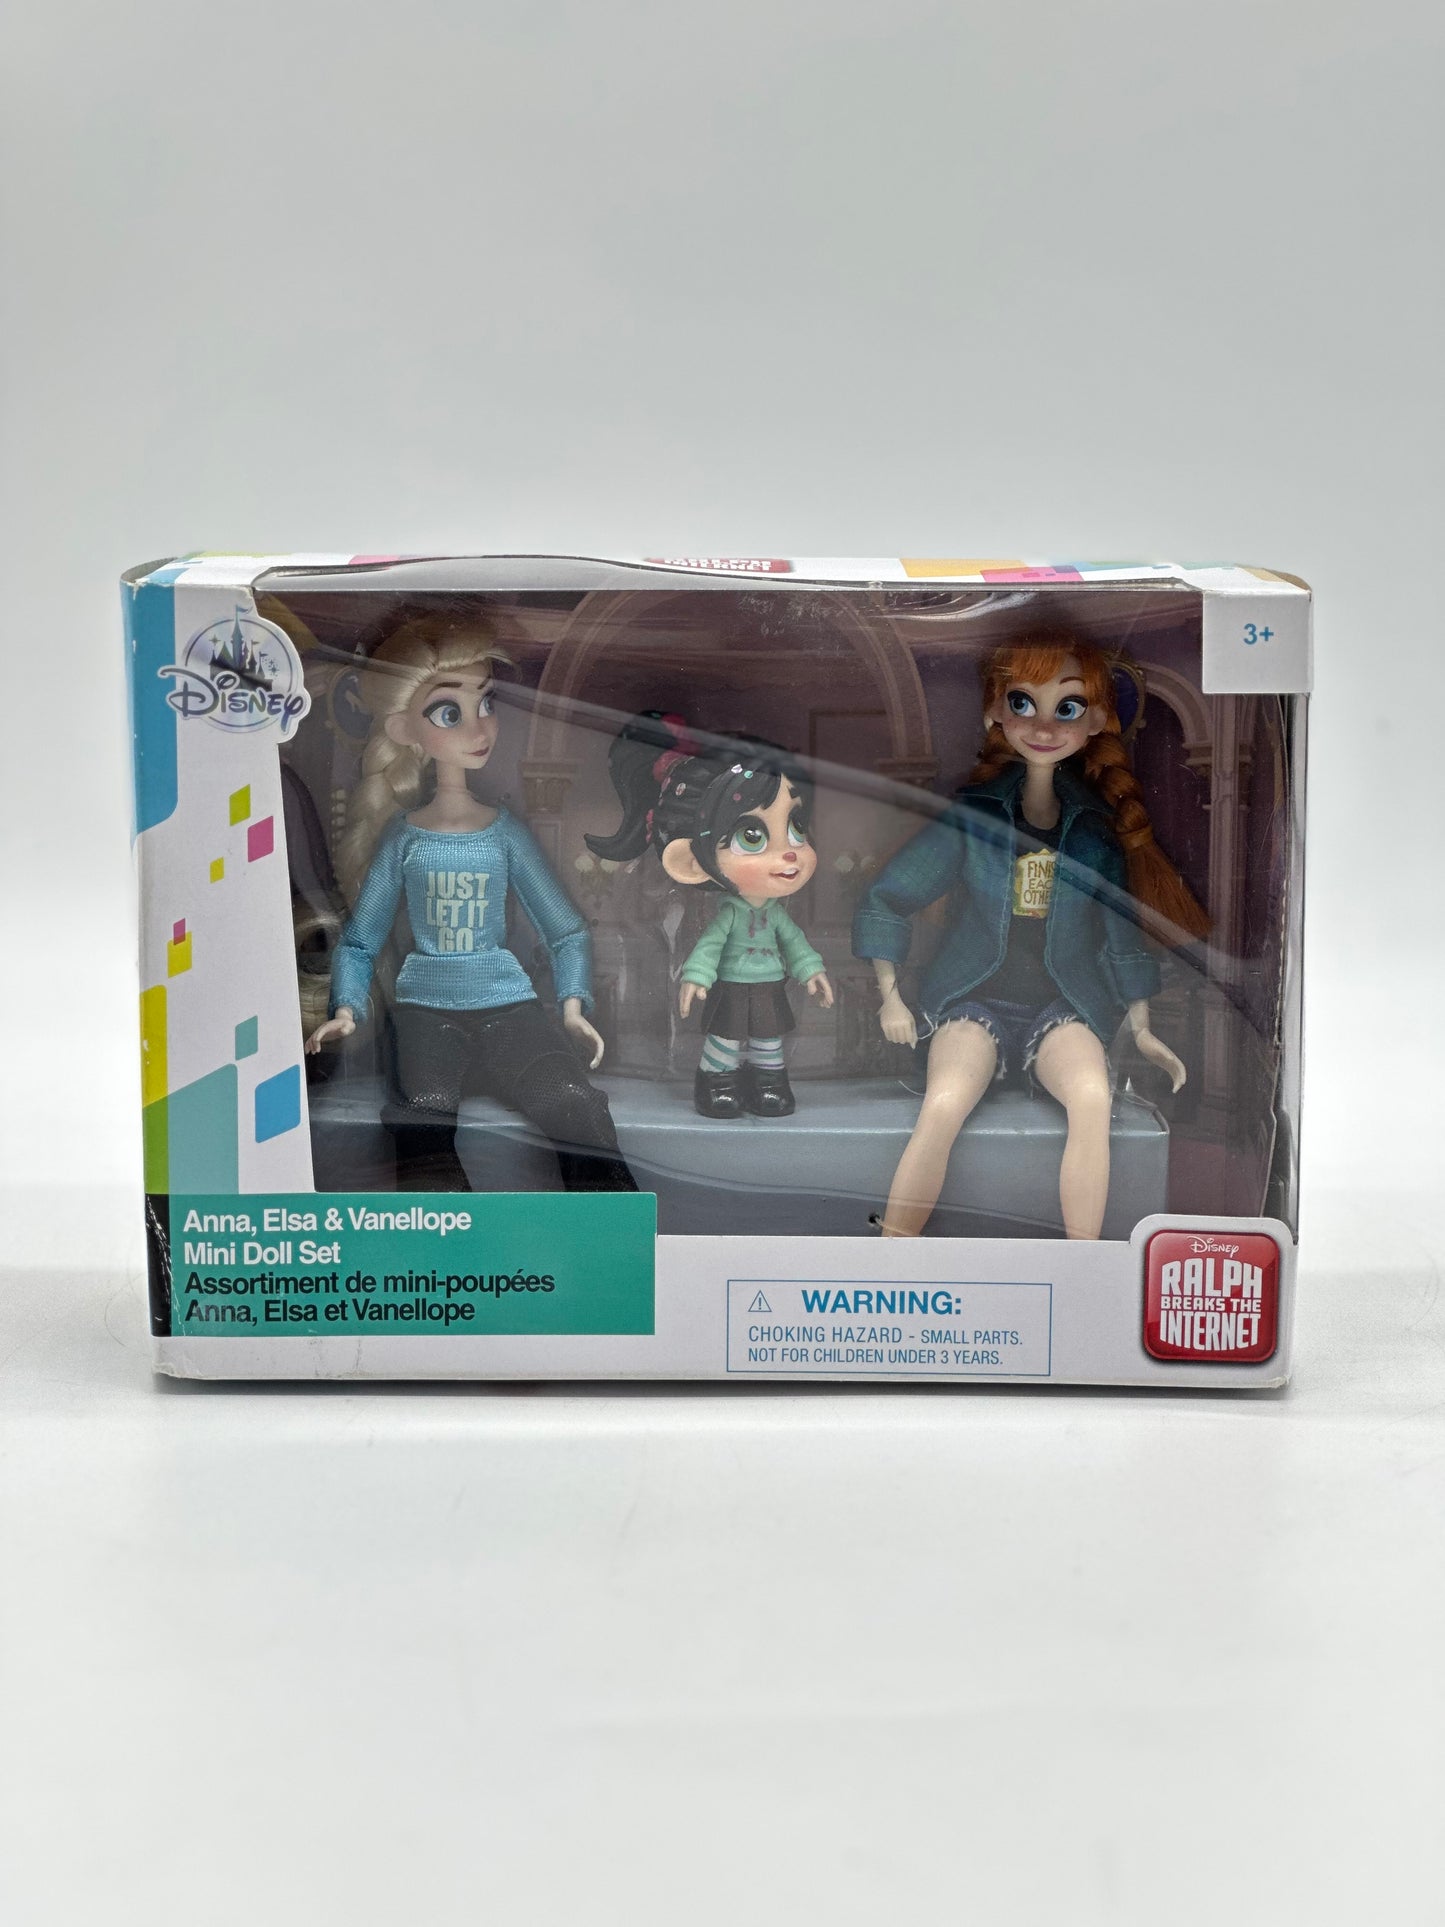 Anna, Elsa & Vanellope Mini Doll Set